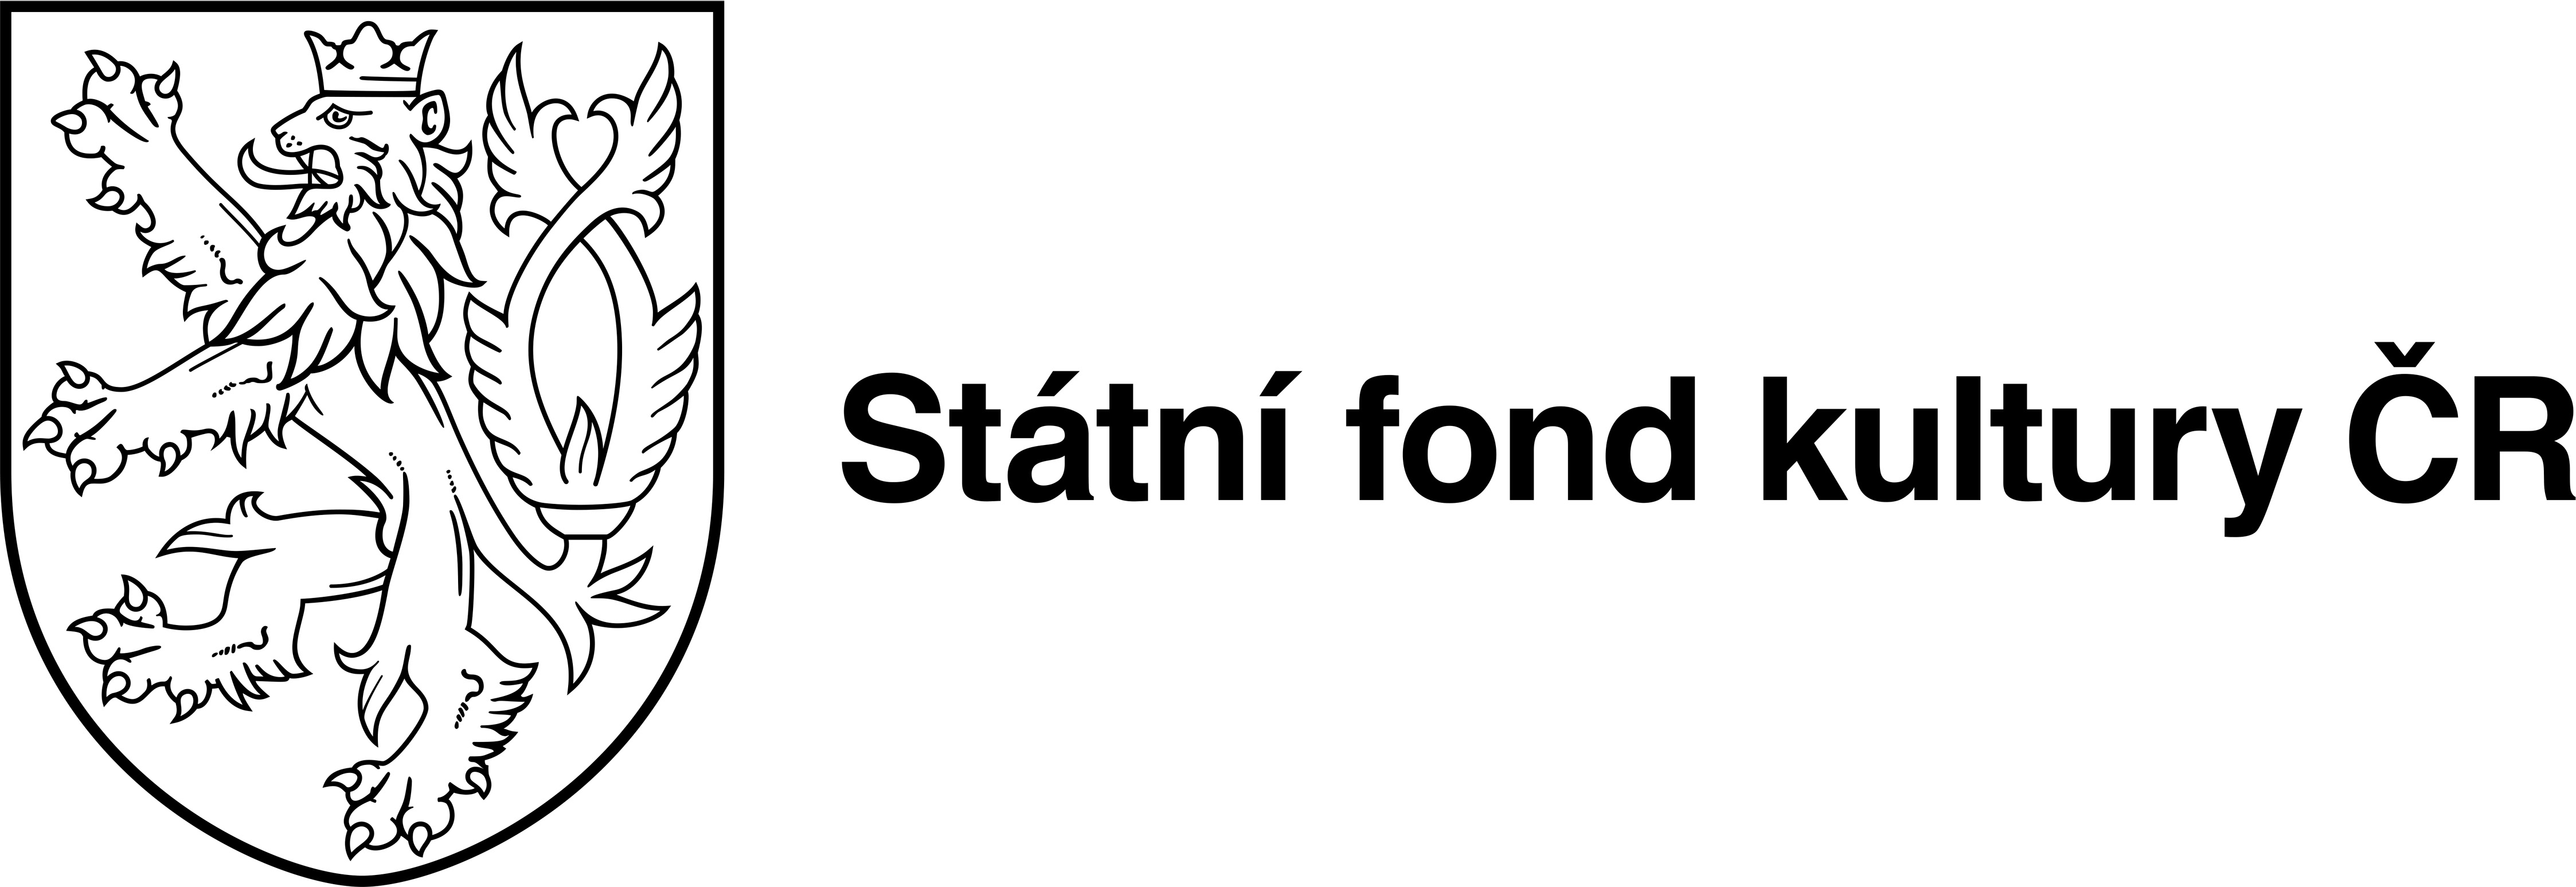 logo sfk